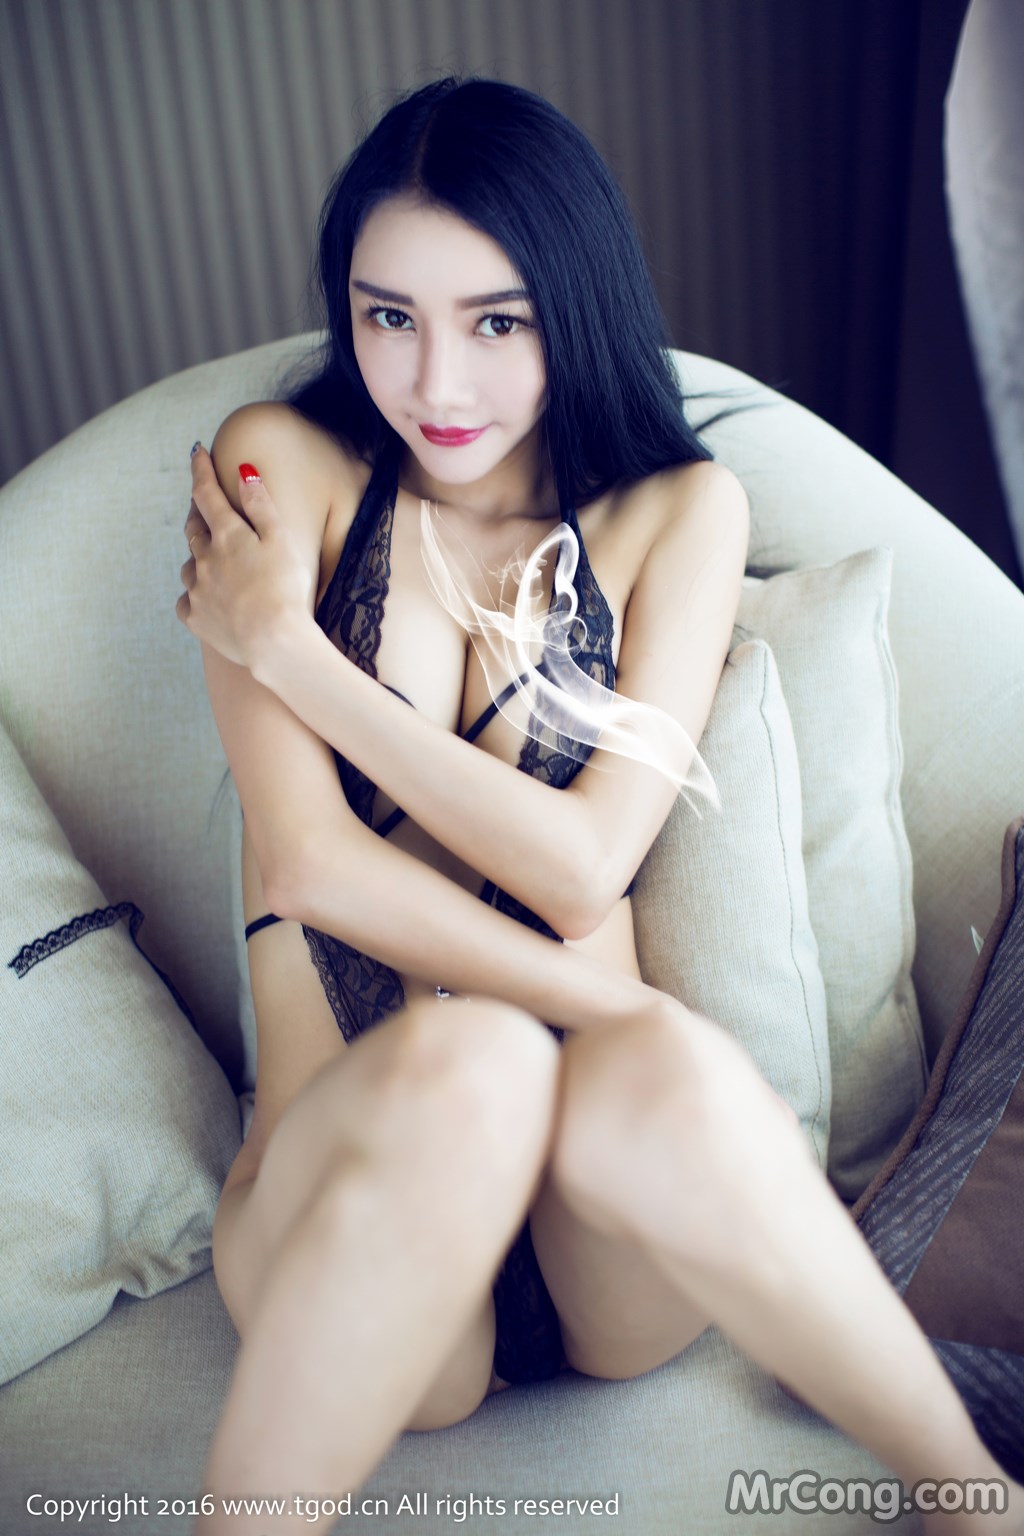 TGOD 2016-05-23: Model Jessie (婕 西 儿) (42 photos) photo 1-7